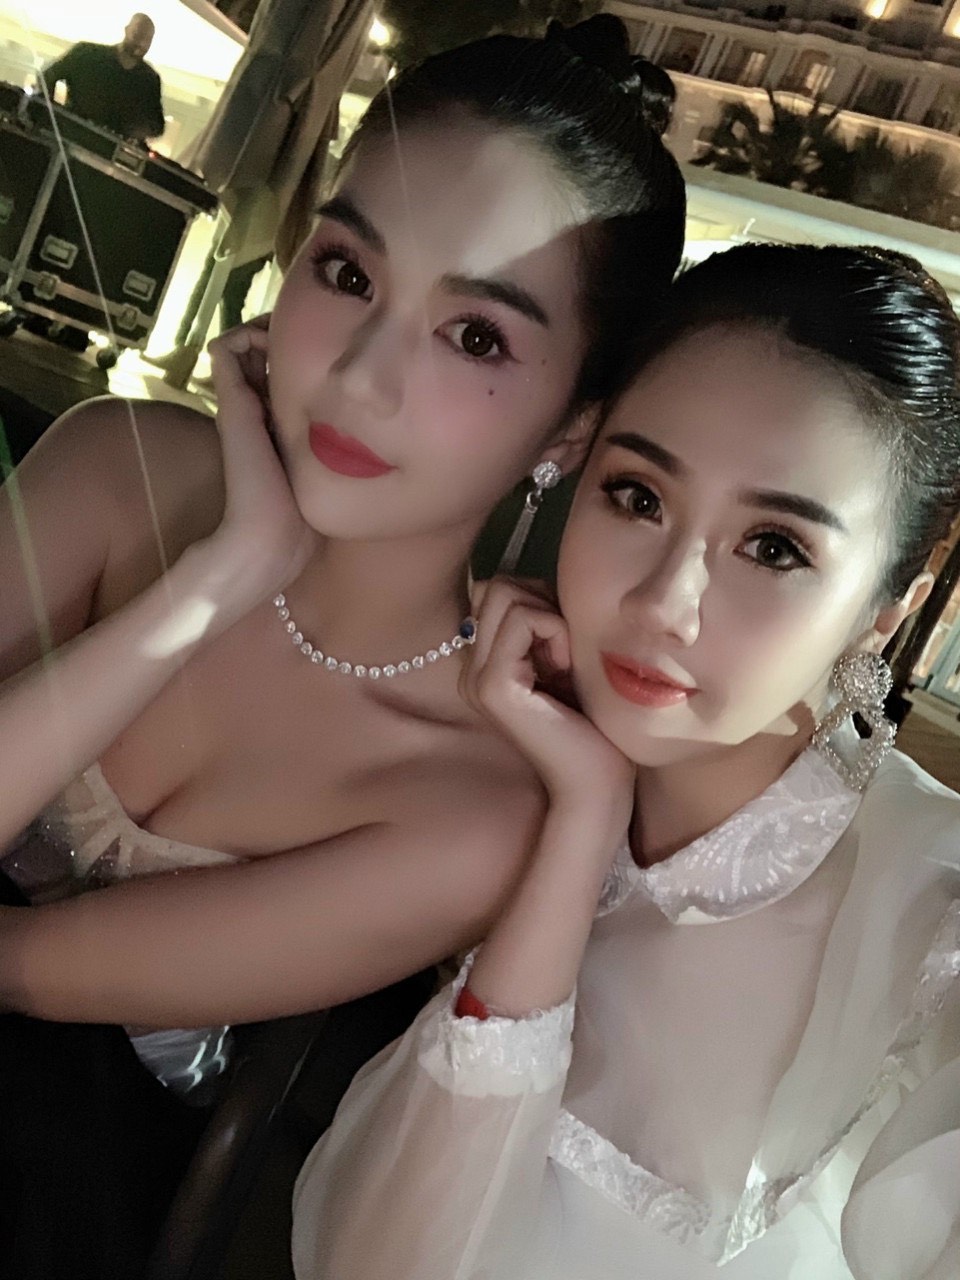 Cô gái xinh đẹp bị nhầm là Ngọc Trinh khi tham gia Hoa hậu hoàn vũ Việt Nam 2021